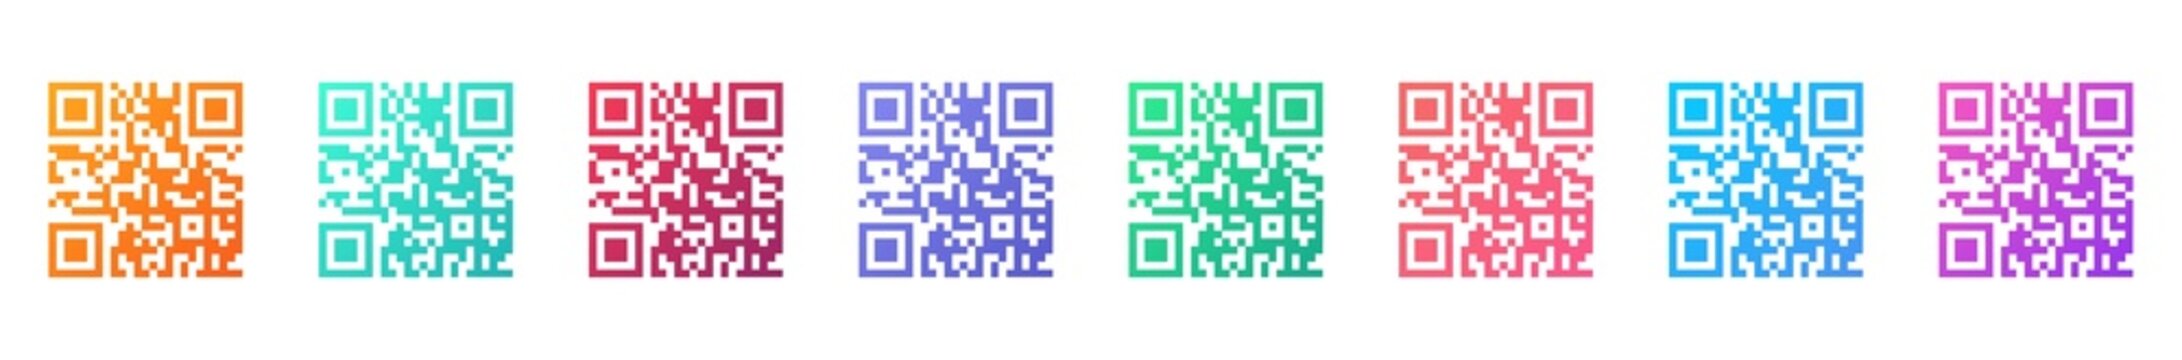 QR code colorful set icon. QR code sign for smartphone scanning. Qr code scan information symbol. Template design for sticker, logo, mobile app. Vector illustration